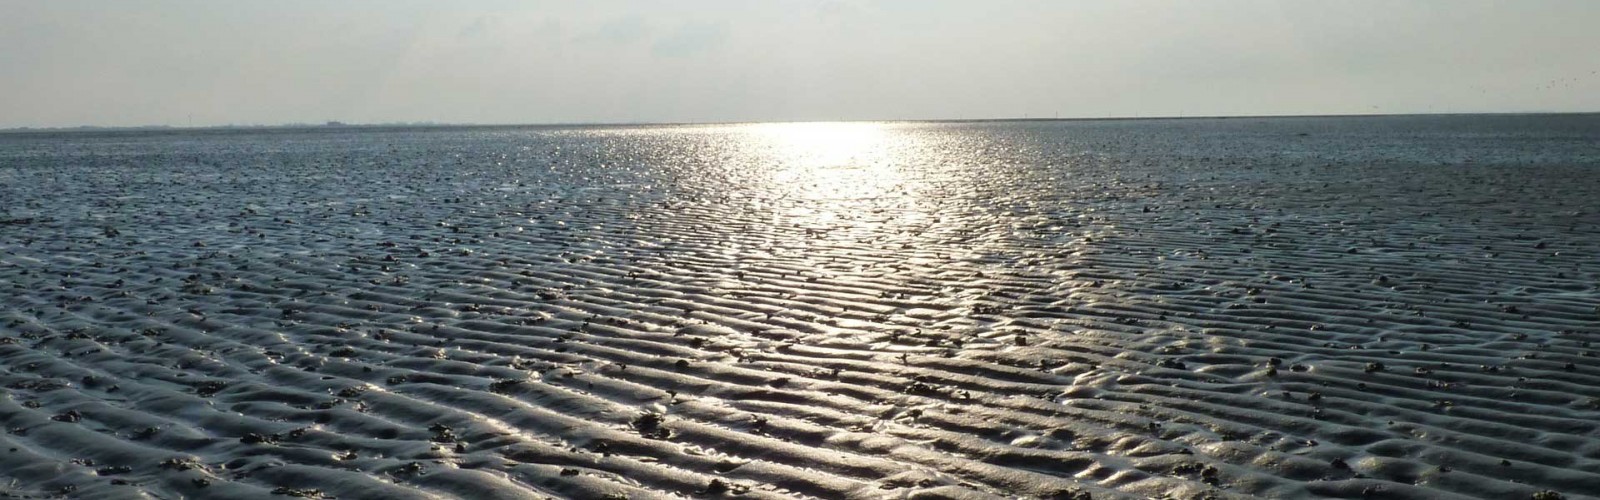 Das UNESCO Weltnaturerbe Wattenmeer